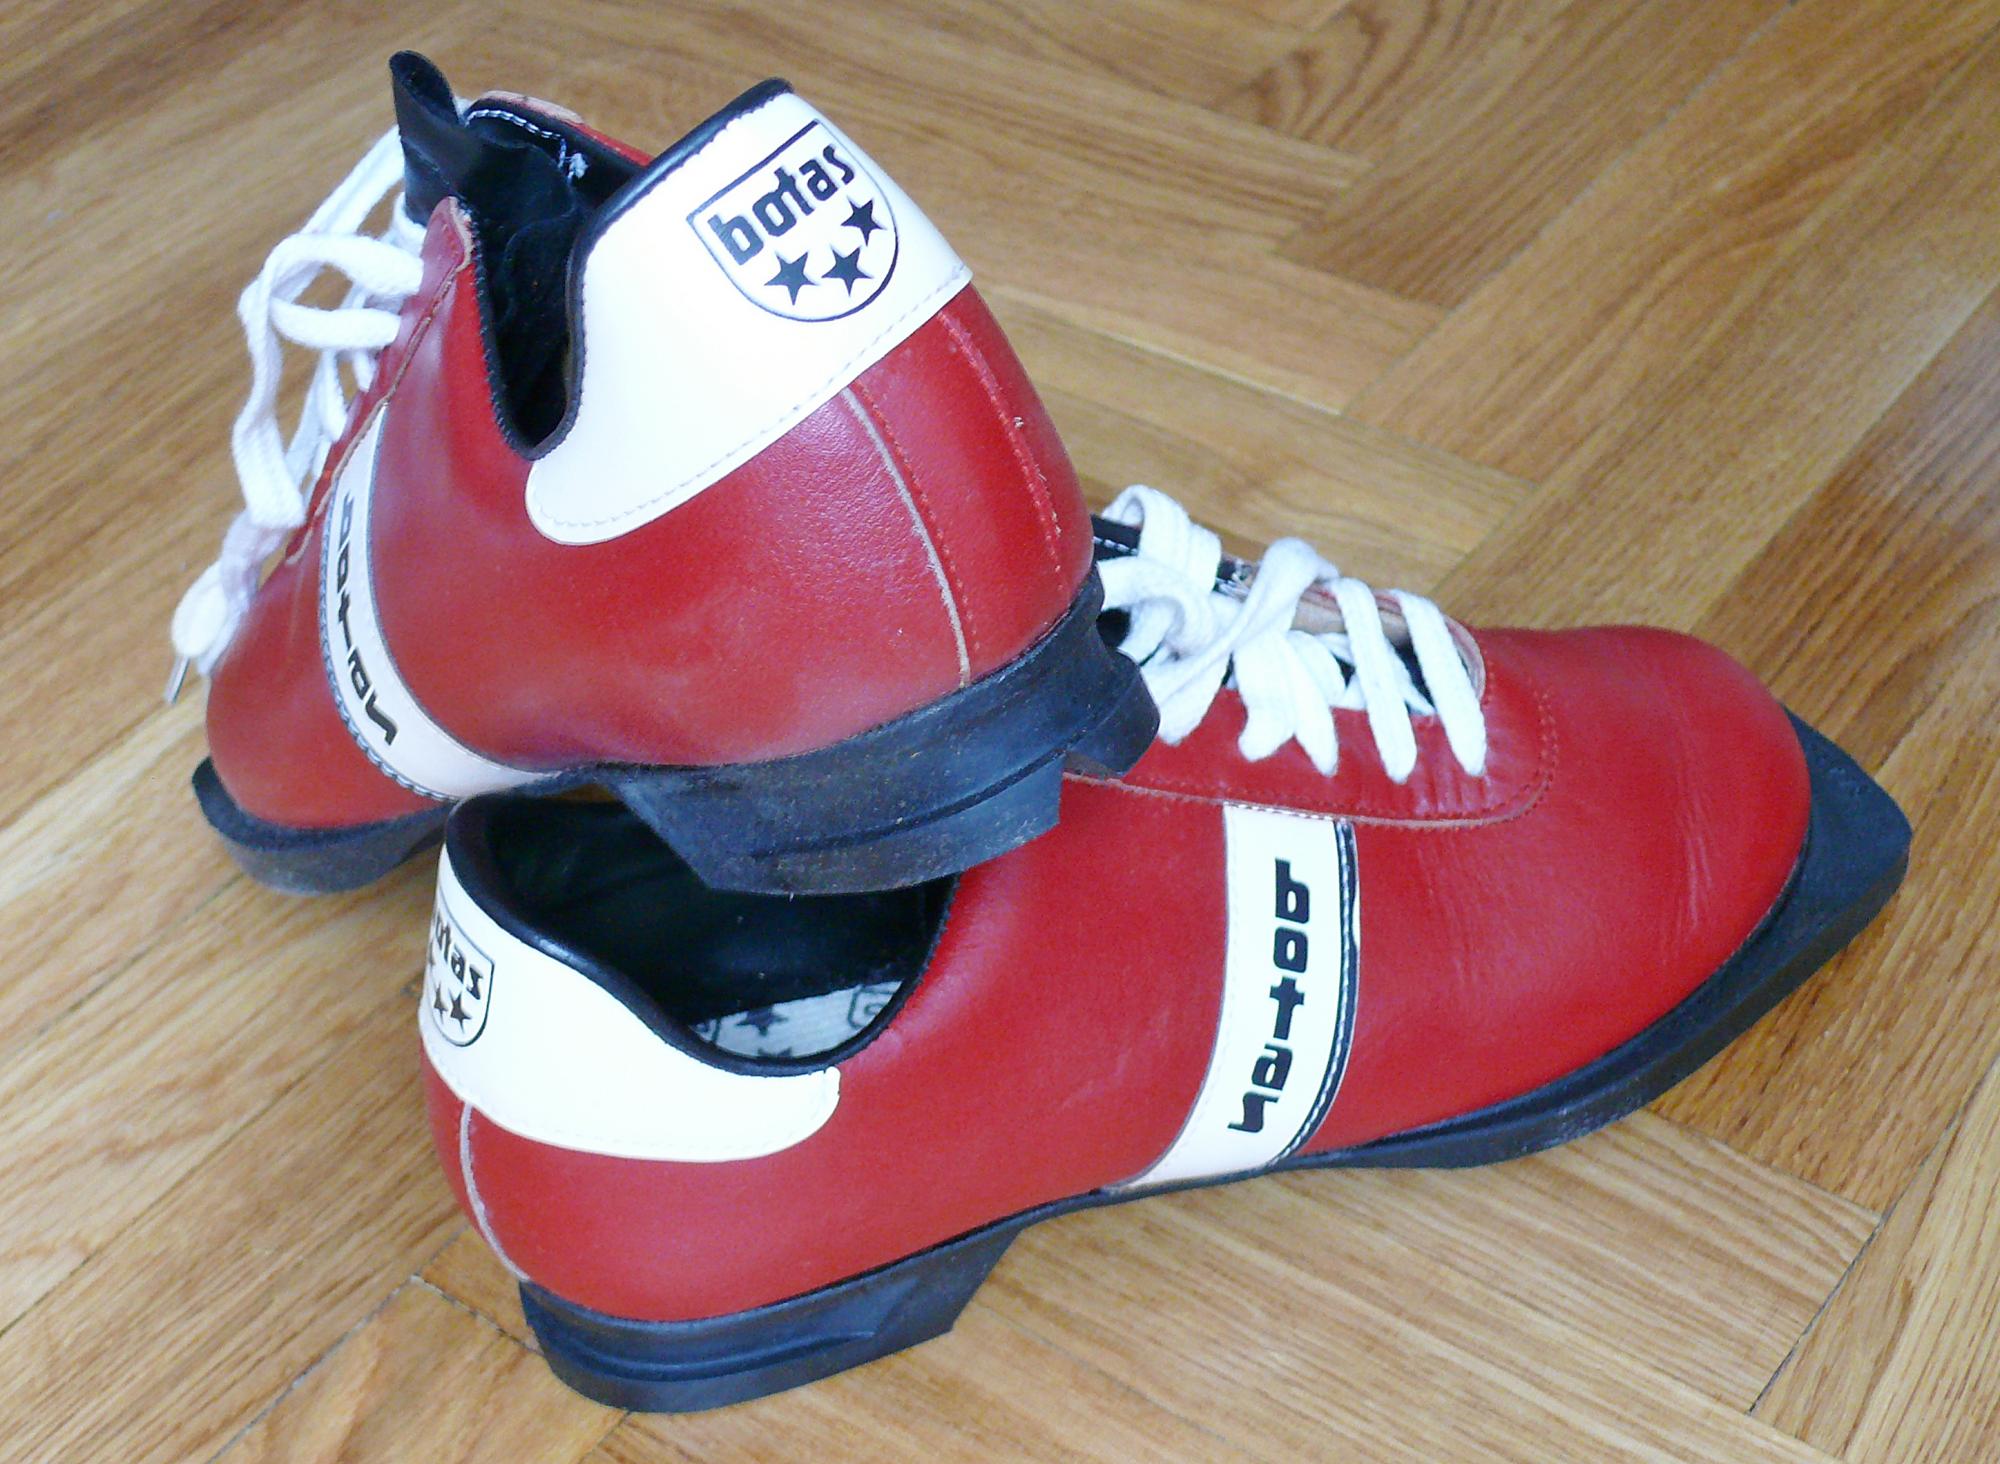 Чешские лыжные ботинки Ботас